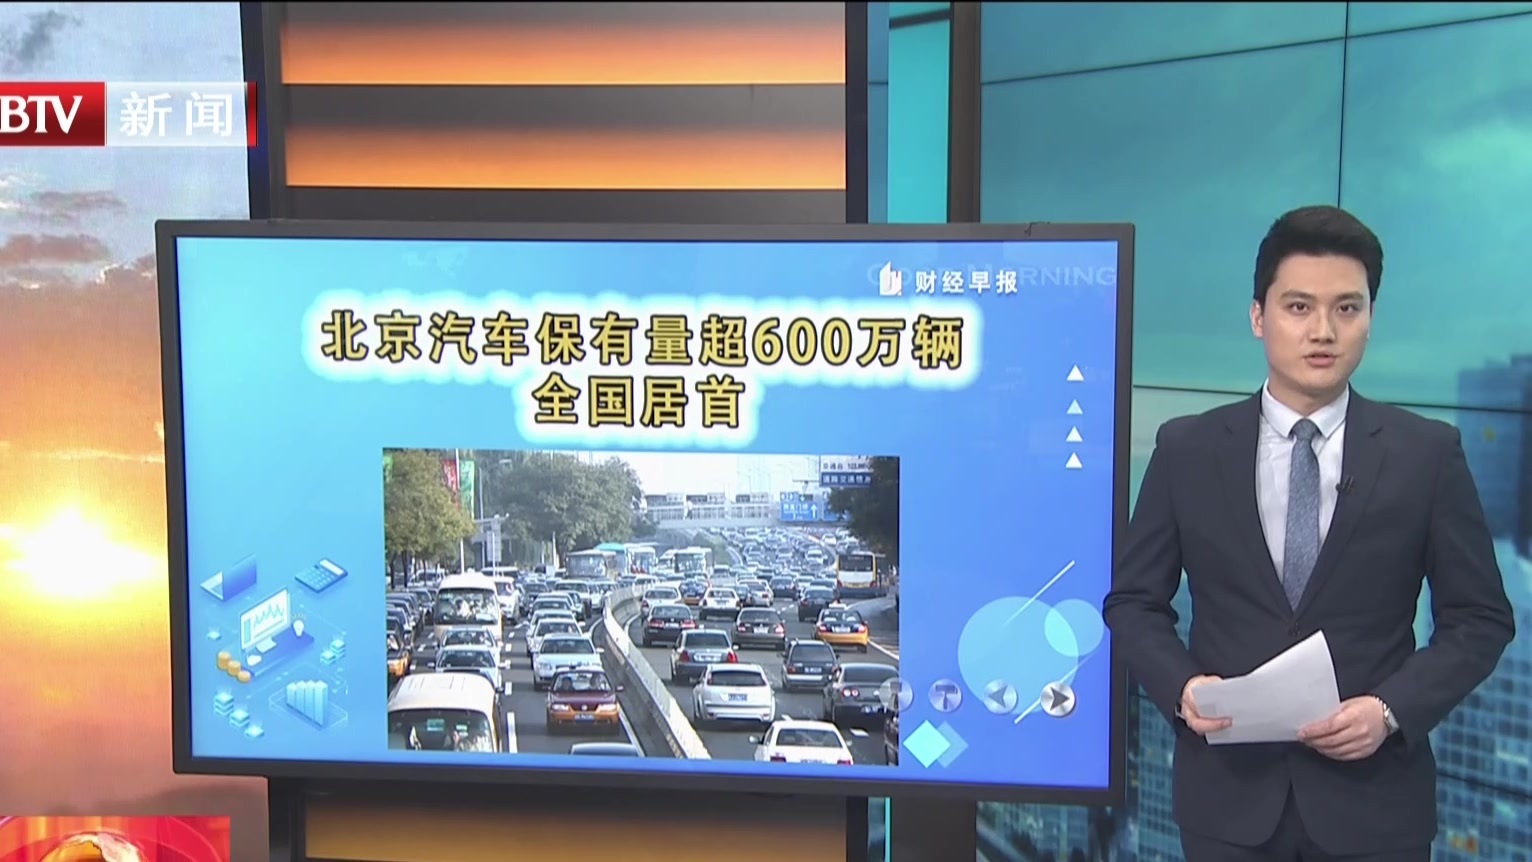 北京汽车保有量超600万辆全国居首